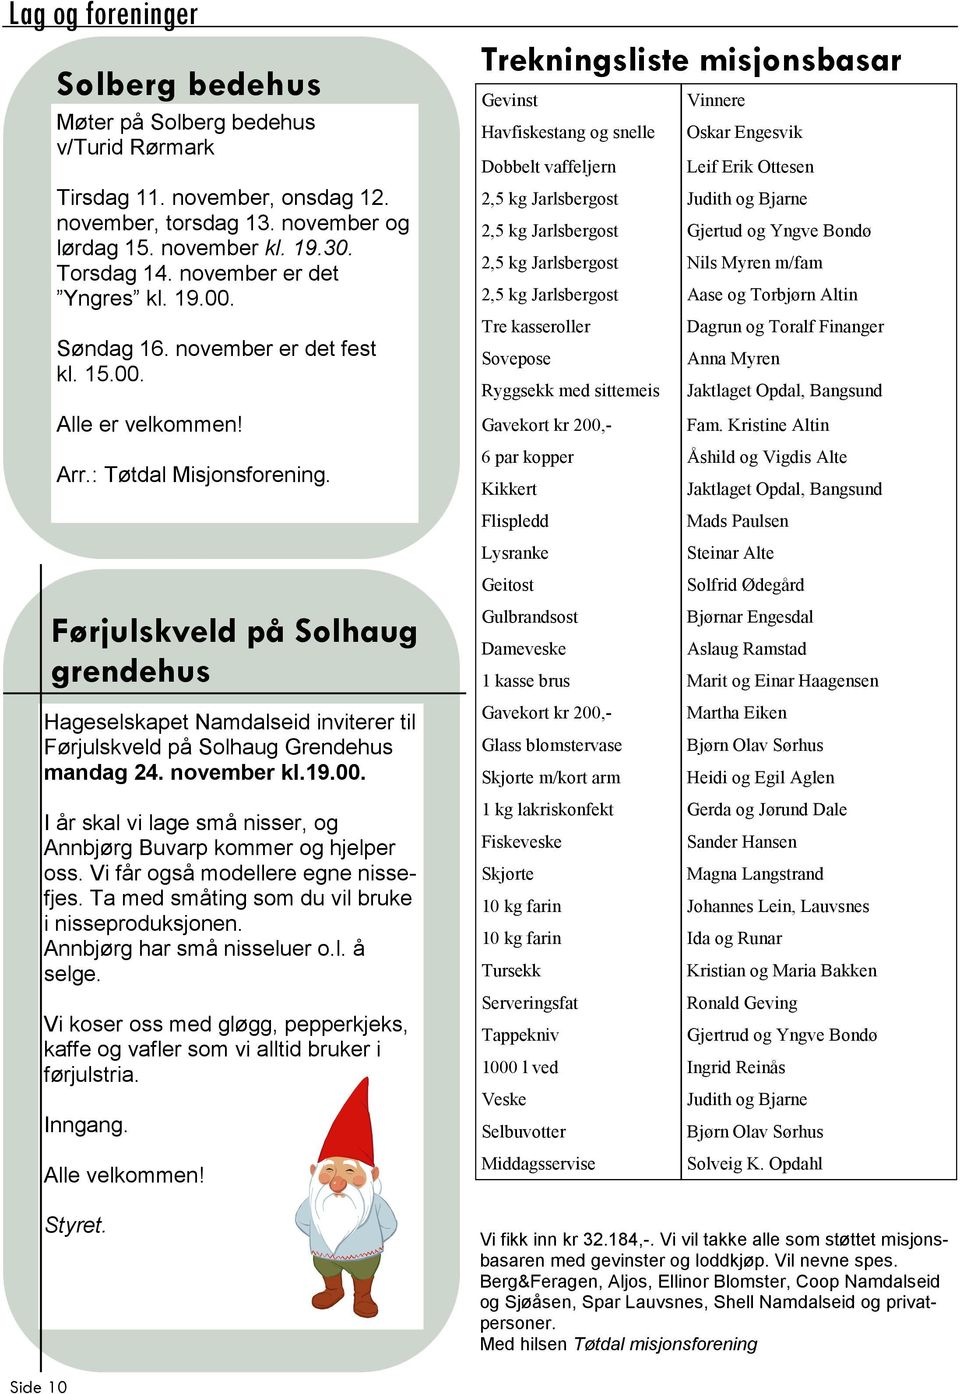 Førjulskveld på Solhaug grendehus Hageselskapet Namdalseid inviterer til Førjulskveld på Solhaug Grendehus mandag 24. november kl.19.00.